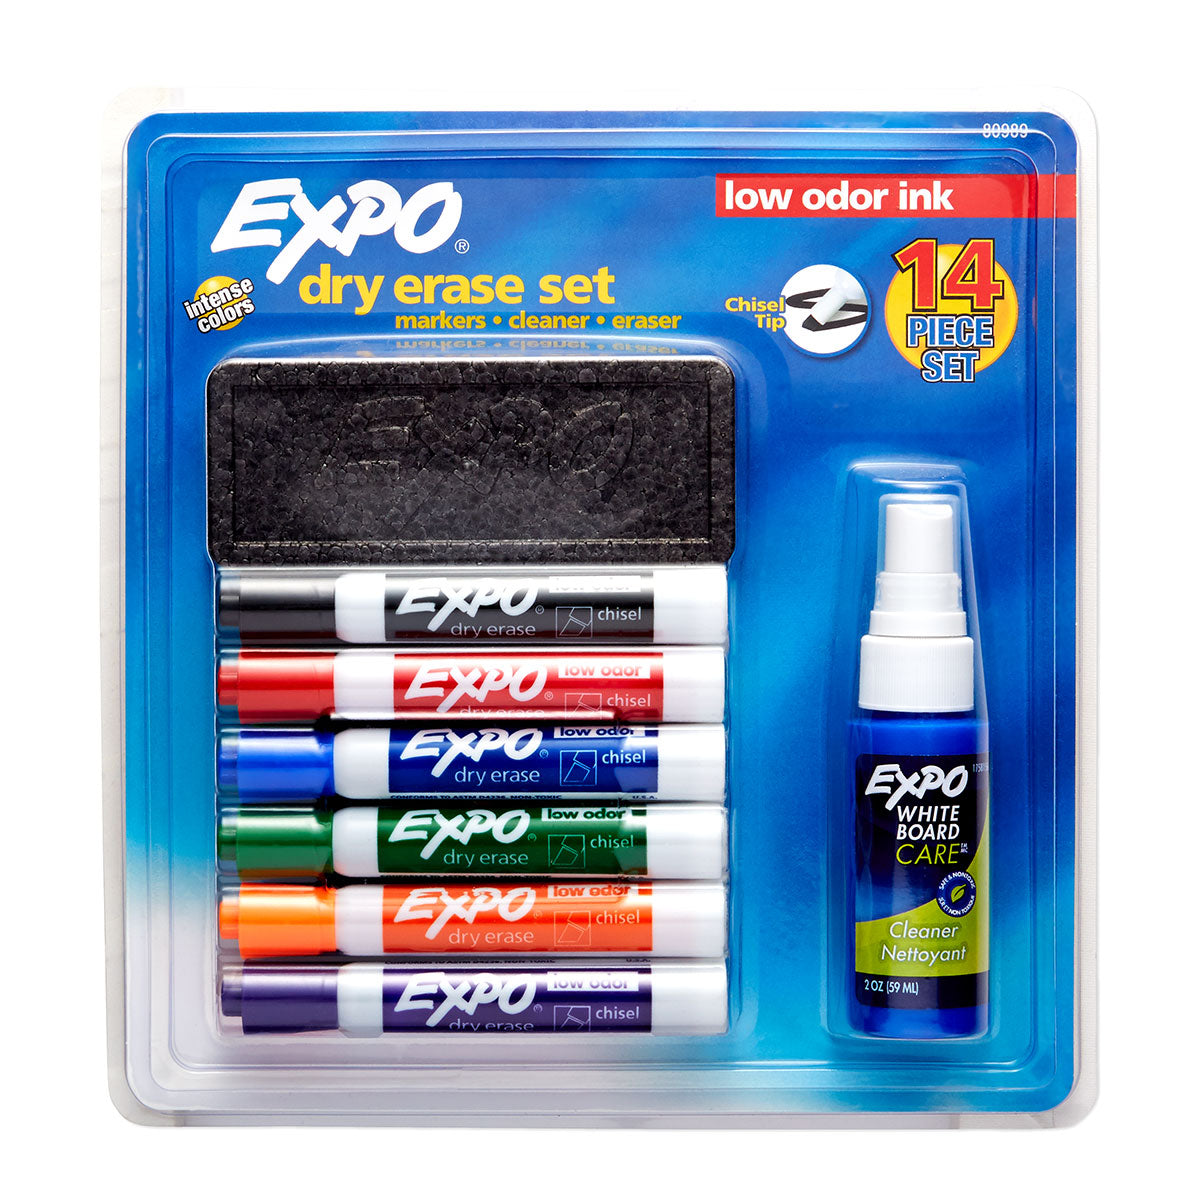 Mr. Pen- Whiteboard Tape, 12 Pack, Black, Thin Tape for Dry Erase